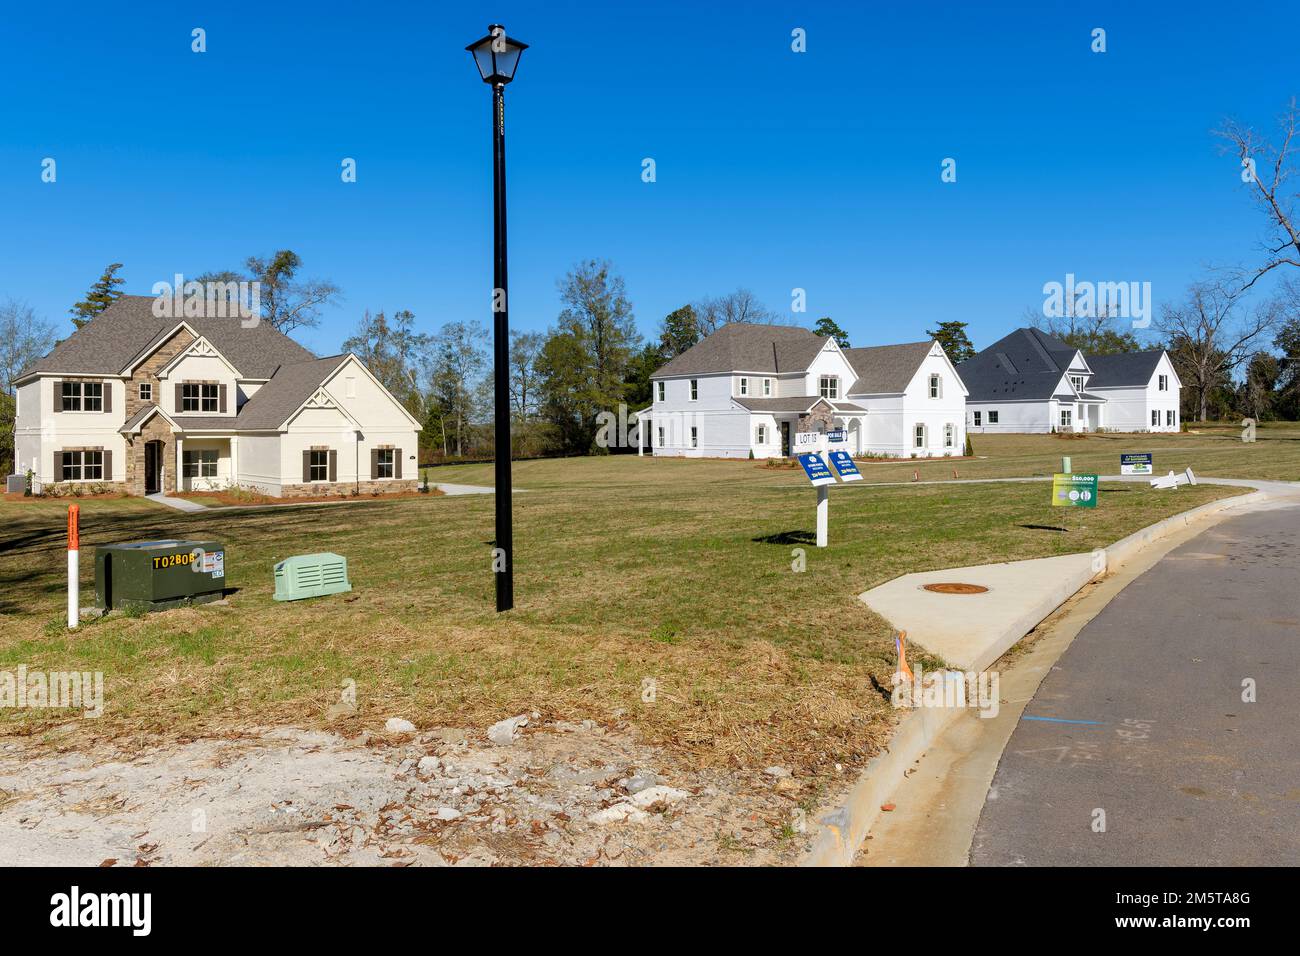 Unbesetzte, unverkaufte neue Häuser, die auf eine Verlangsamung des Immobilienabschwungs oder eine Wohnungskrise oder möglicherweise auf eine Immobilienrezession in Montgomery Alabama, USA, hindeuten. Stockfoto